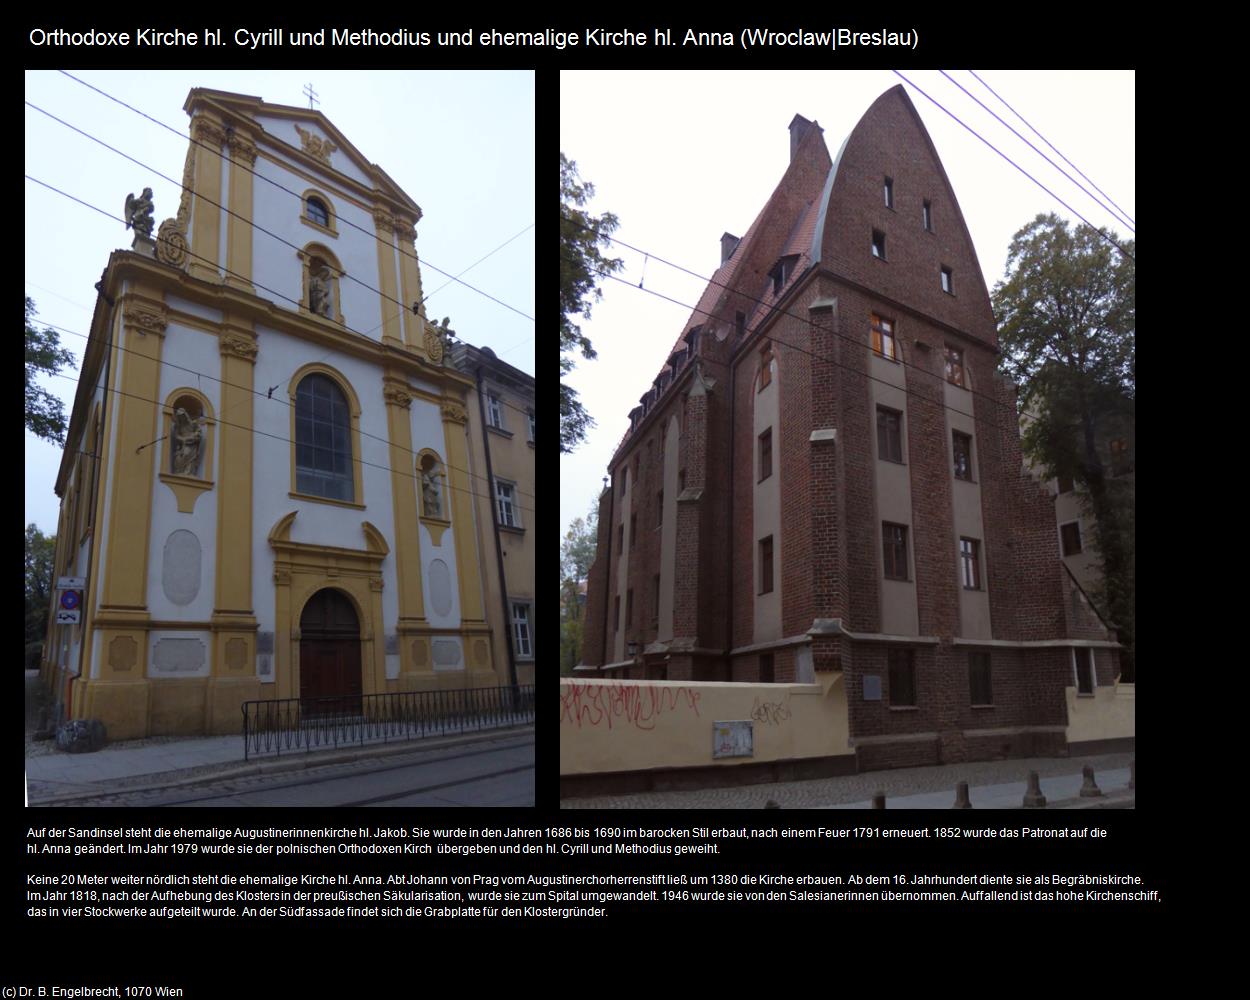 Orth. K. hl. Cyrill und Methodius,ehem. K. hl. Anna  (Wroclaw|Breslau) in POLEN-Schlesien